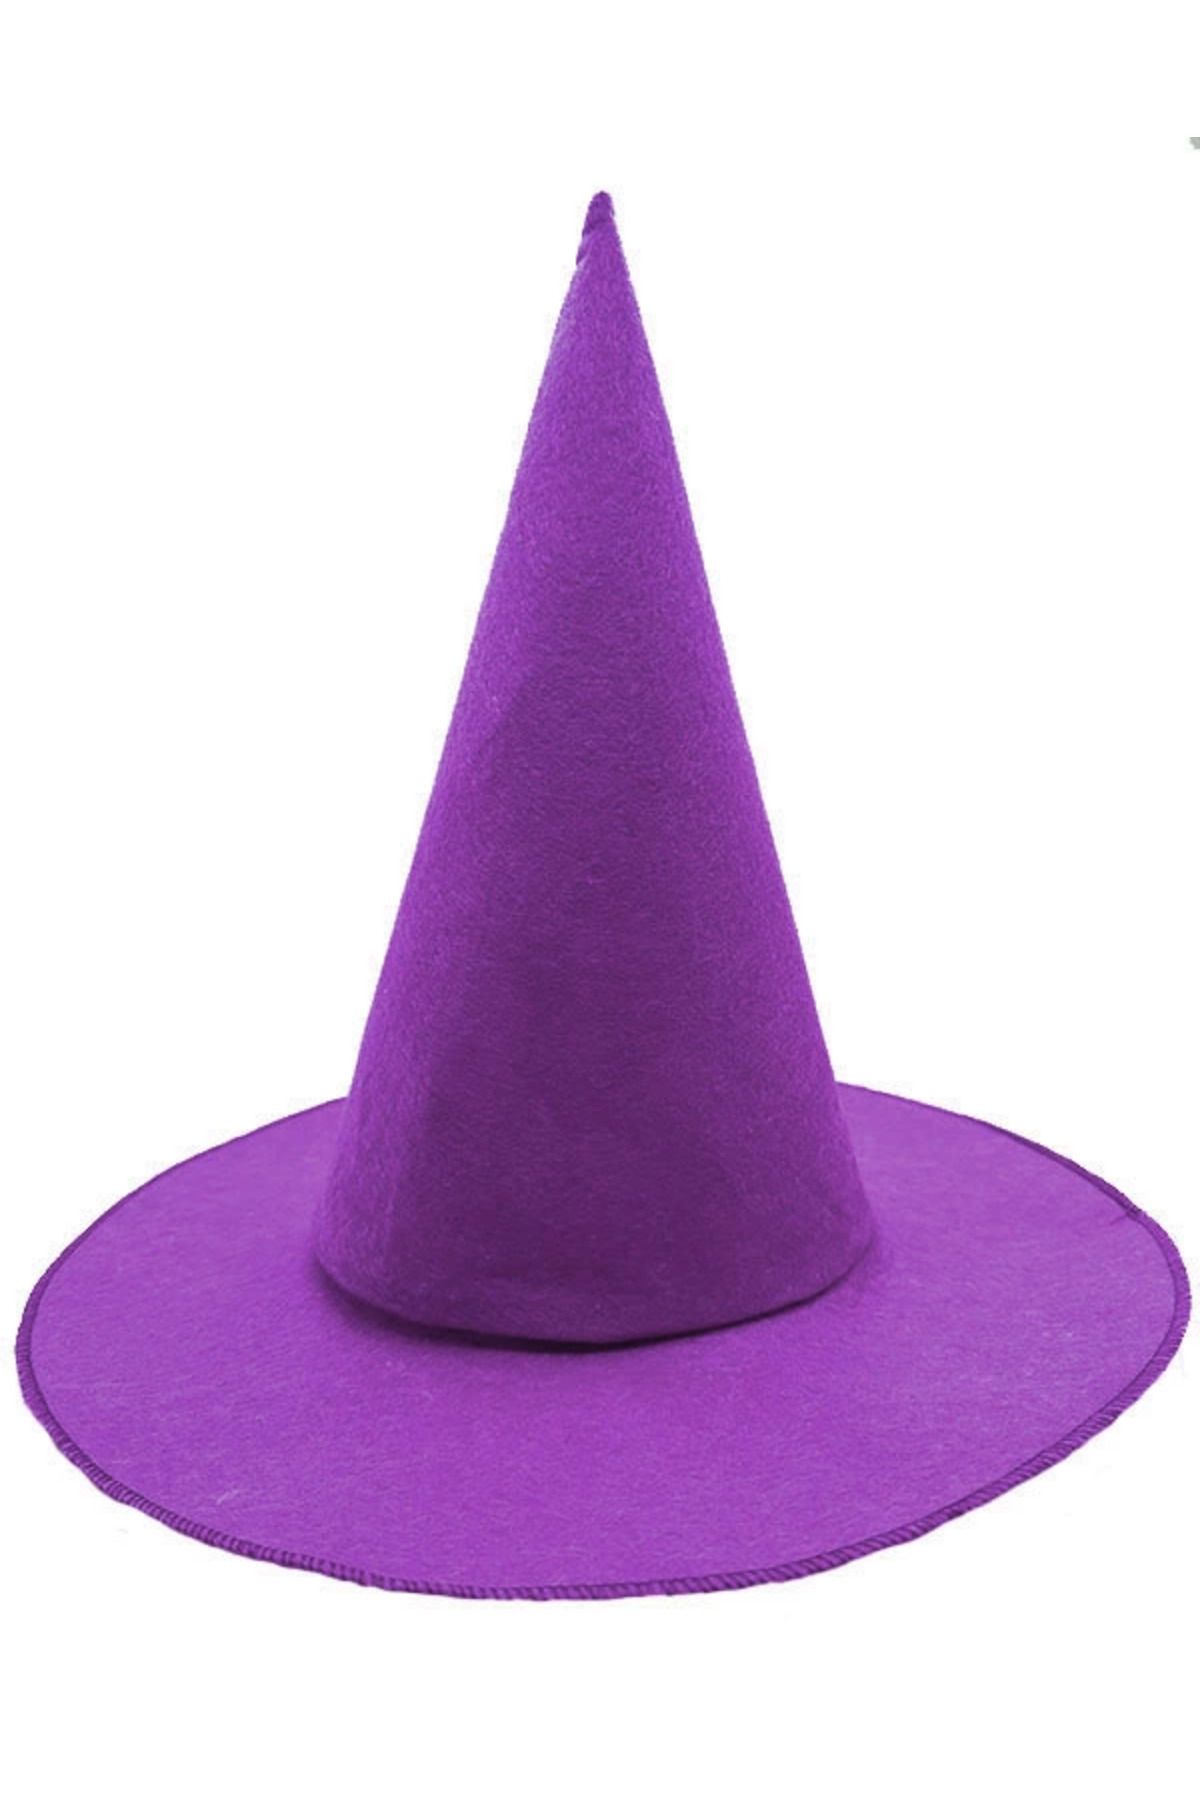 Wisdom Rain Mor Renk Keçe Cadı Şapkası Yetişkin Çocuk Uyumlu 35x38 Cm